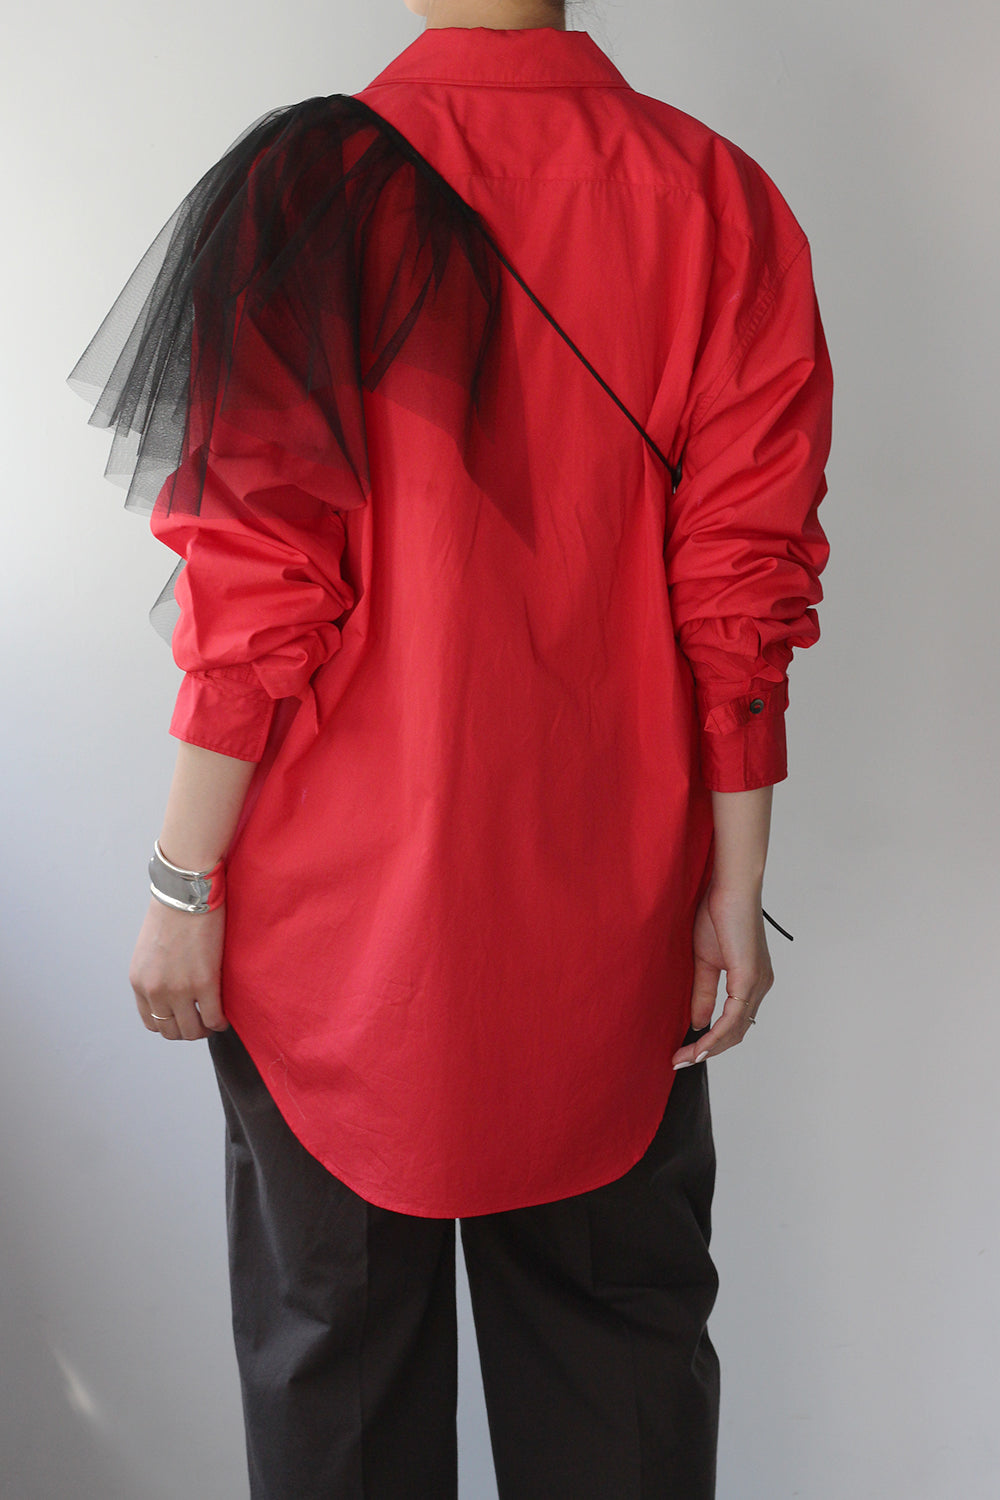 JUN MIKAMI "broad open collar shirt" (red)